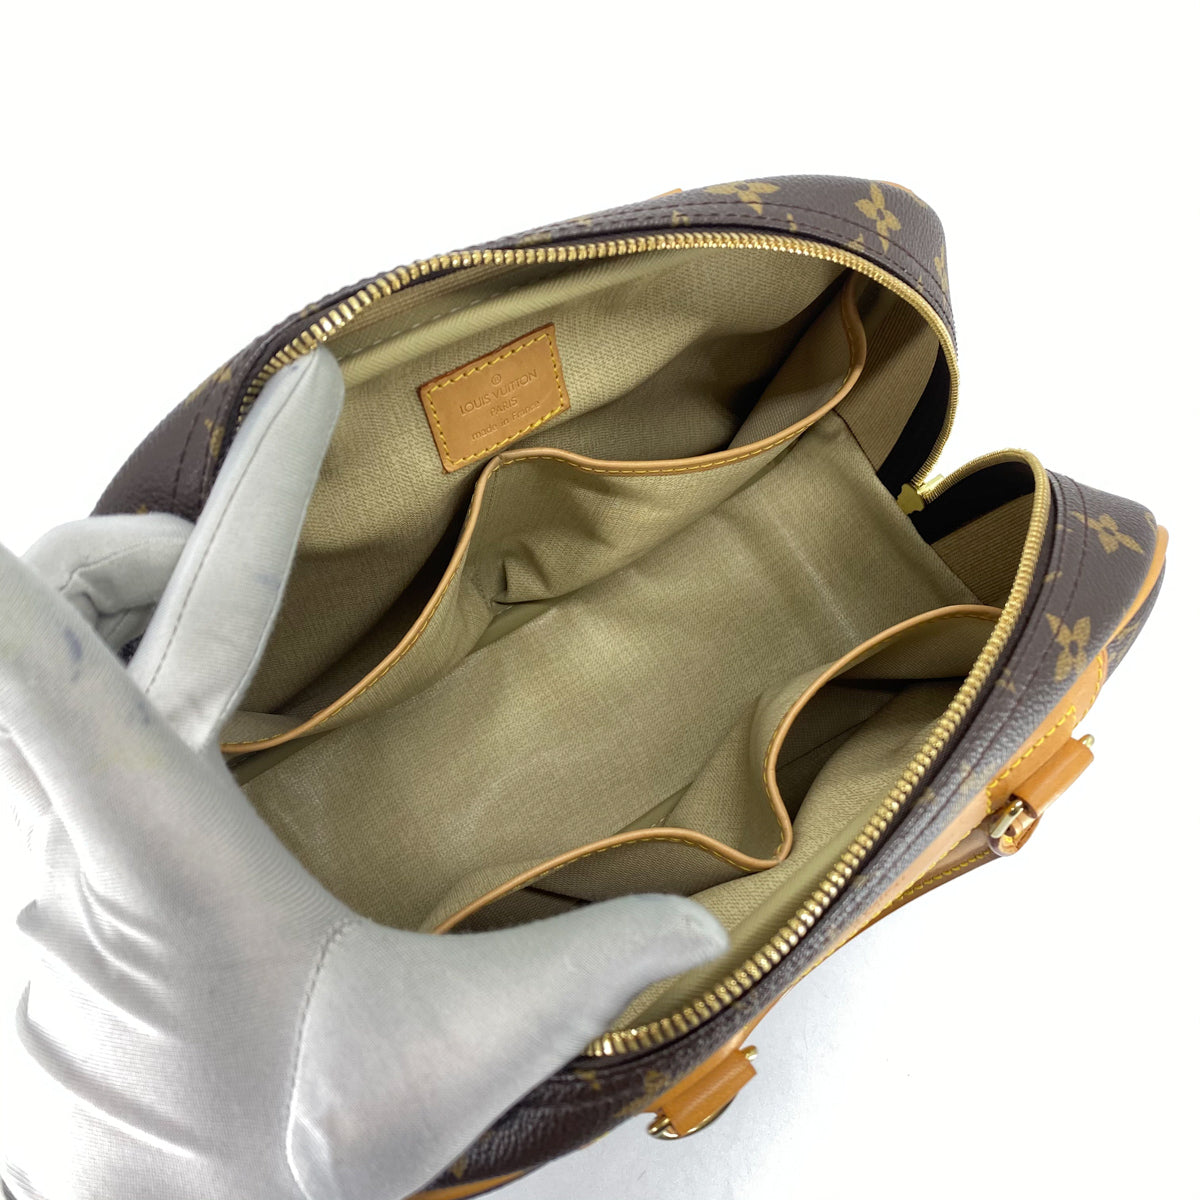 Authentic Louis Vuitton Monogram Trouville Handbag Tote Bag #17195